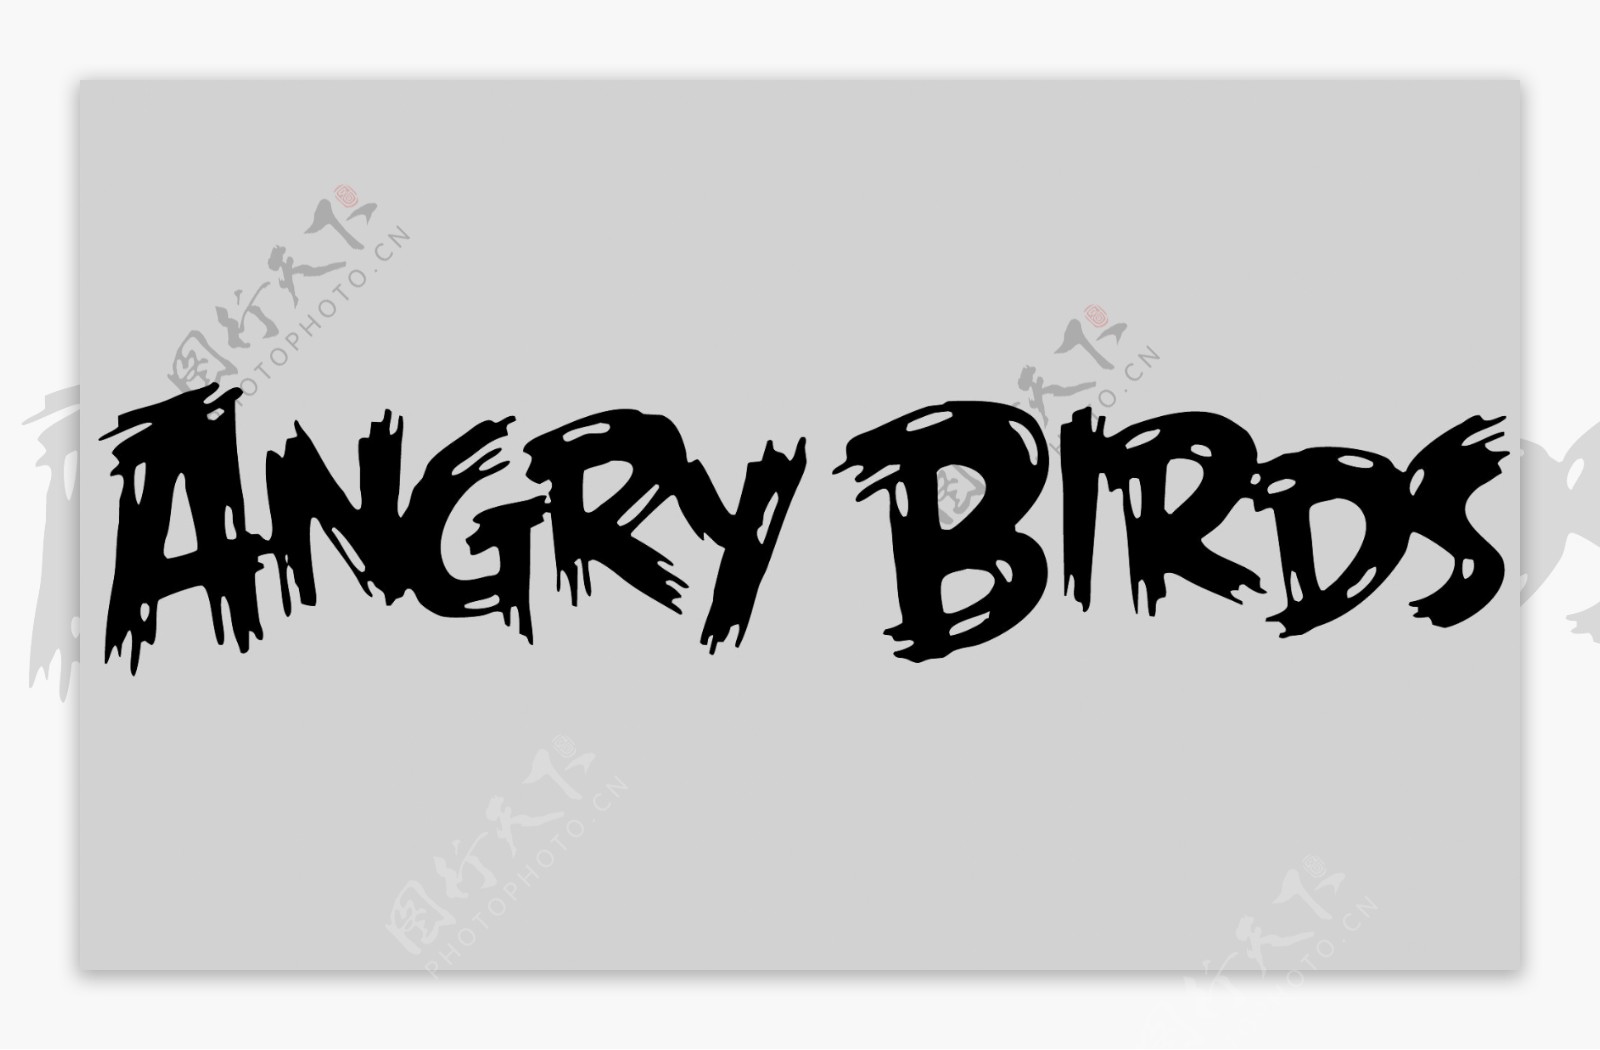 愤怒的小鸟字体设计